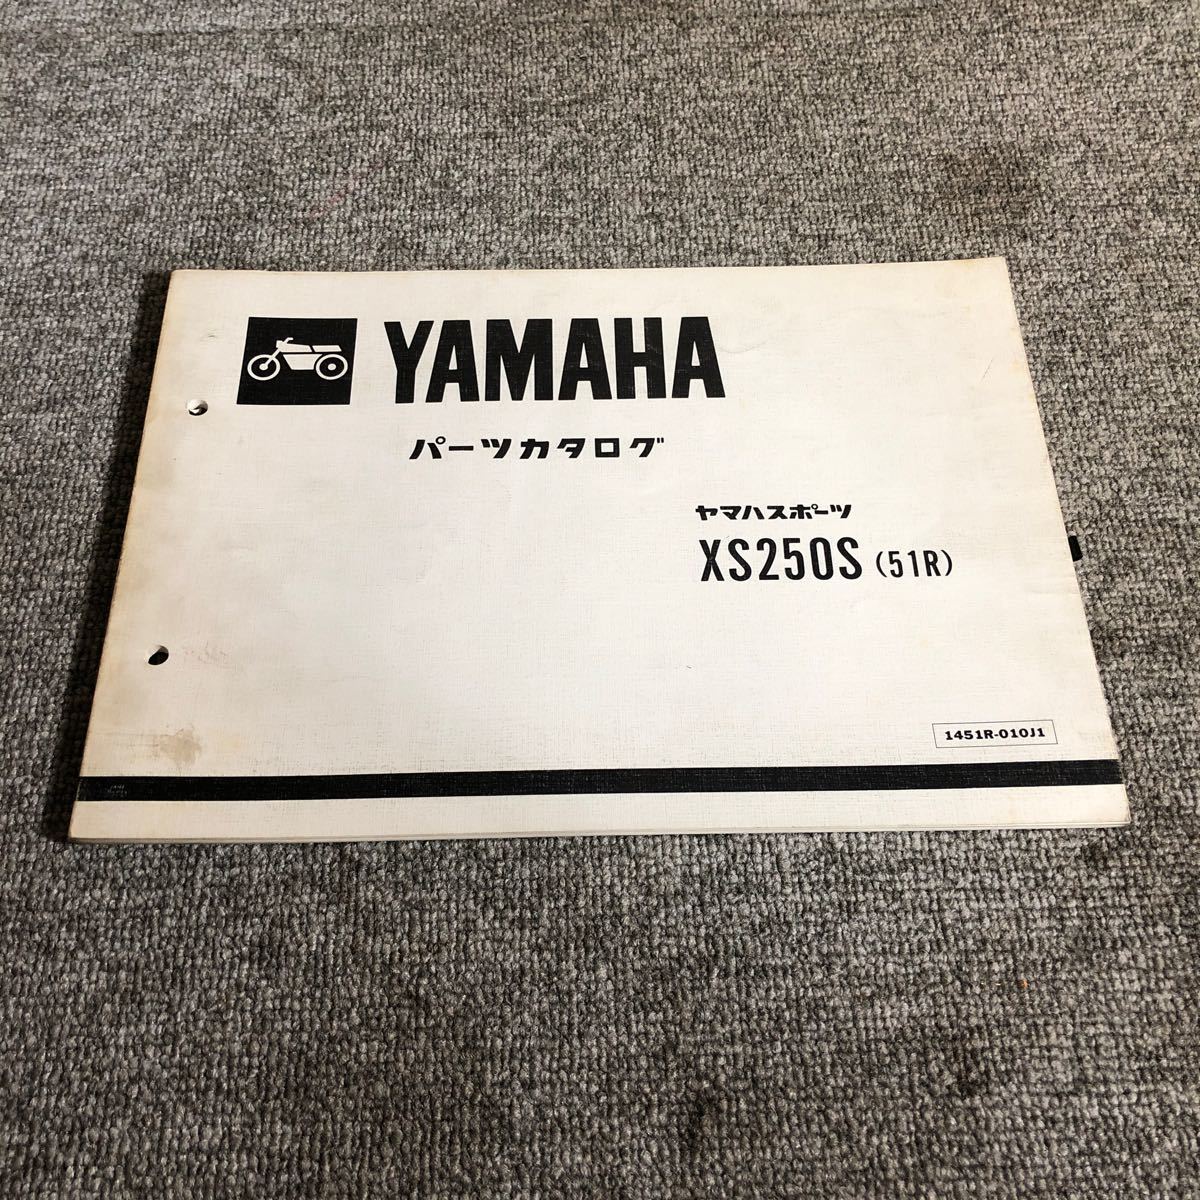 YAMAHA ヤマハ【XS250S(51R)】 パーツカタログ_画像1